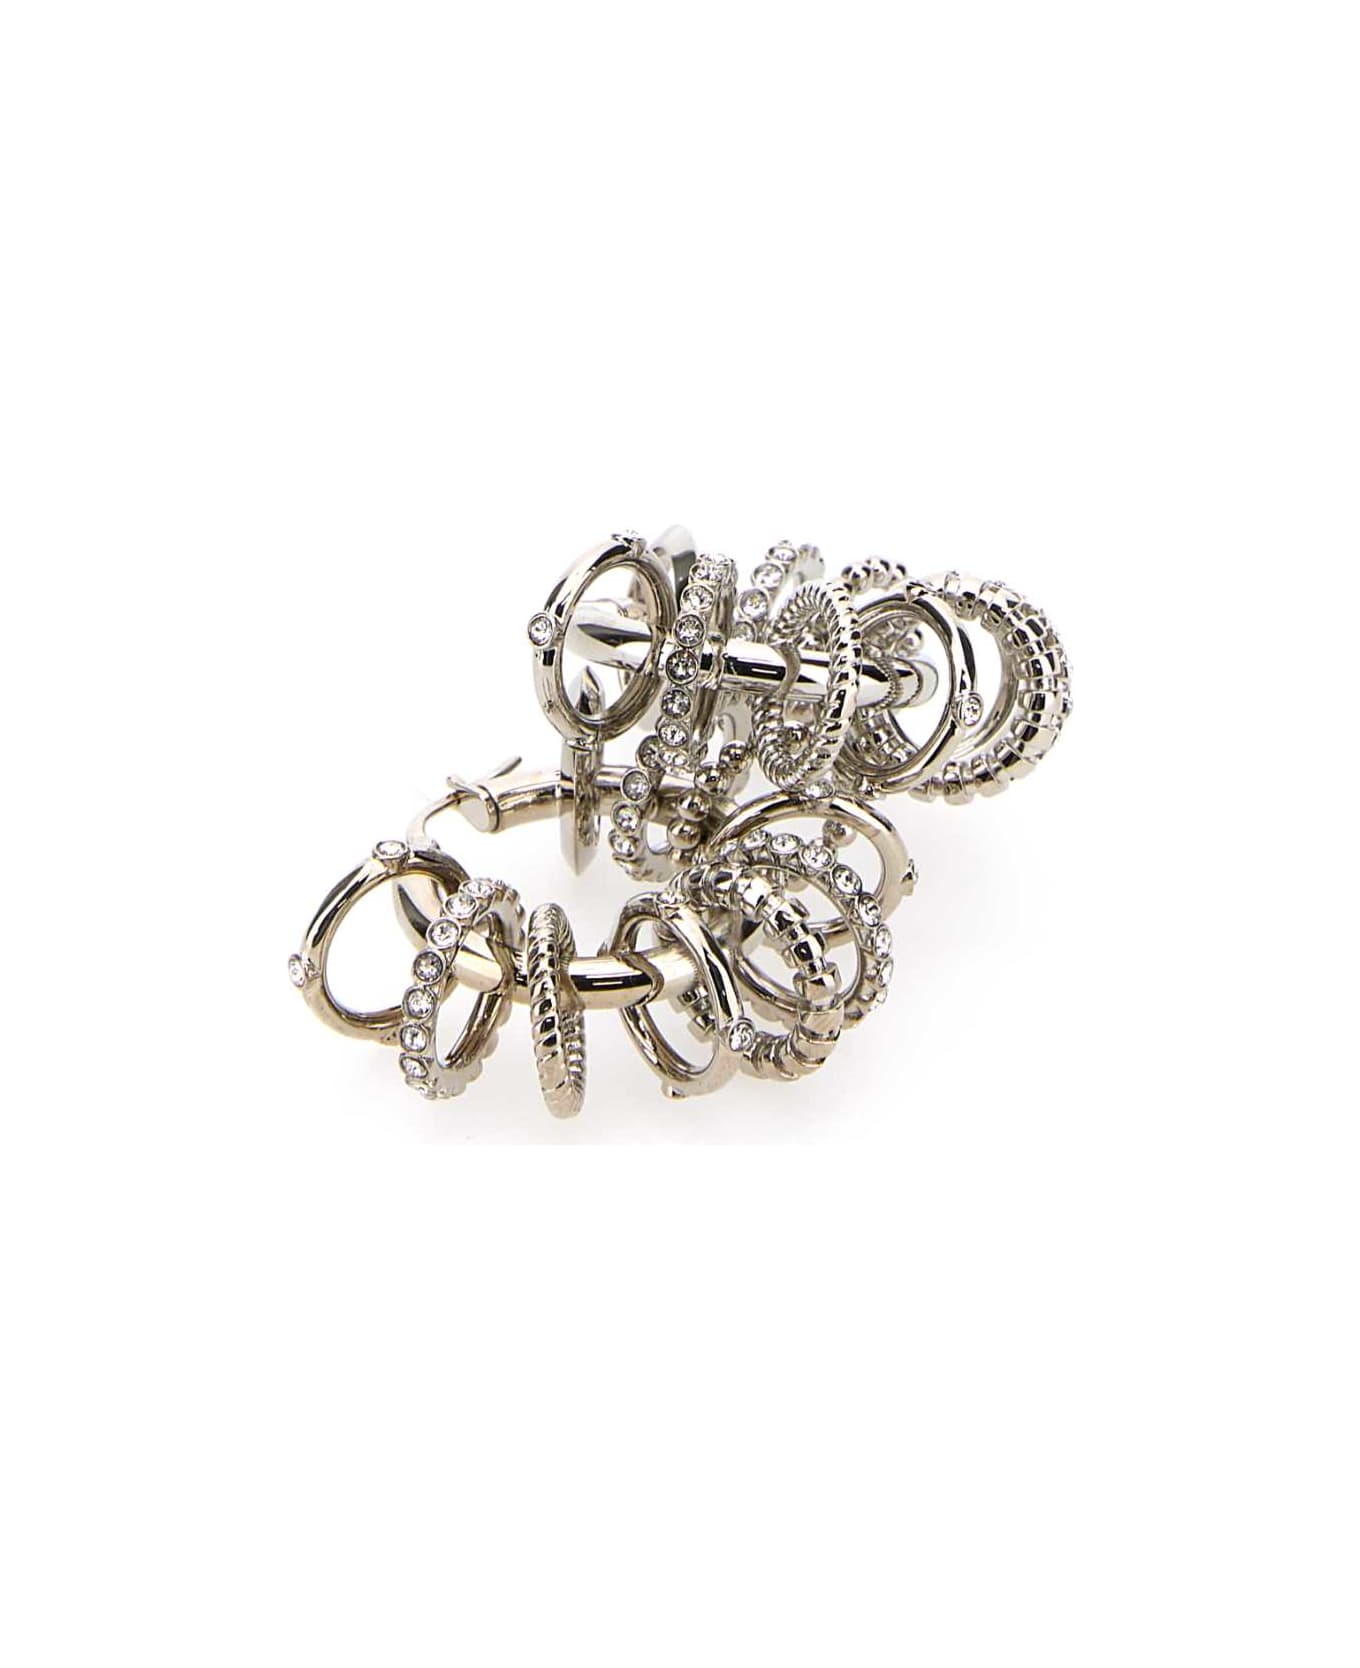 Amina Muaddi Silver Metal Multi Ring Earrings - WHICRYSIBA